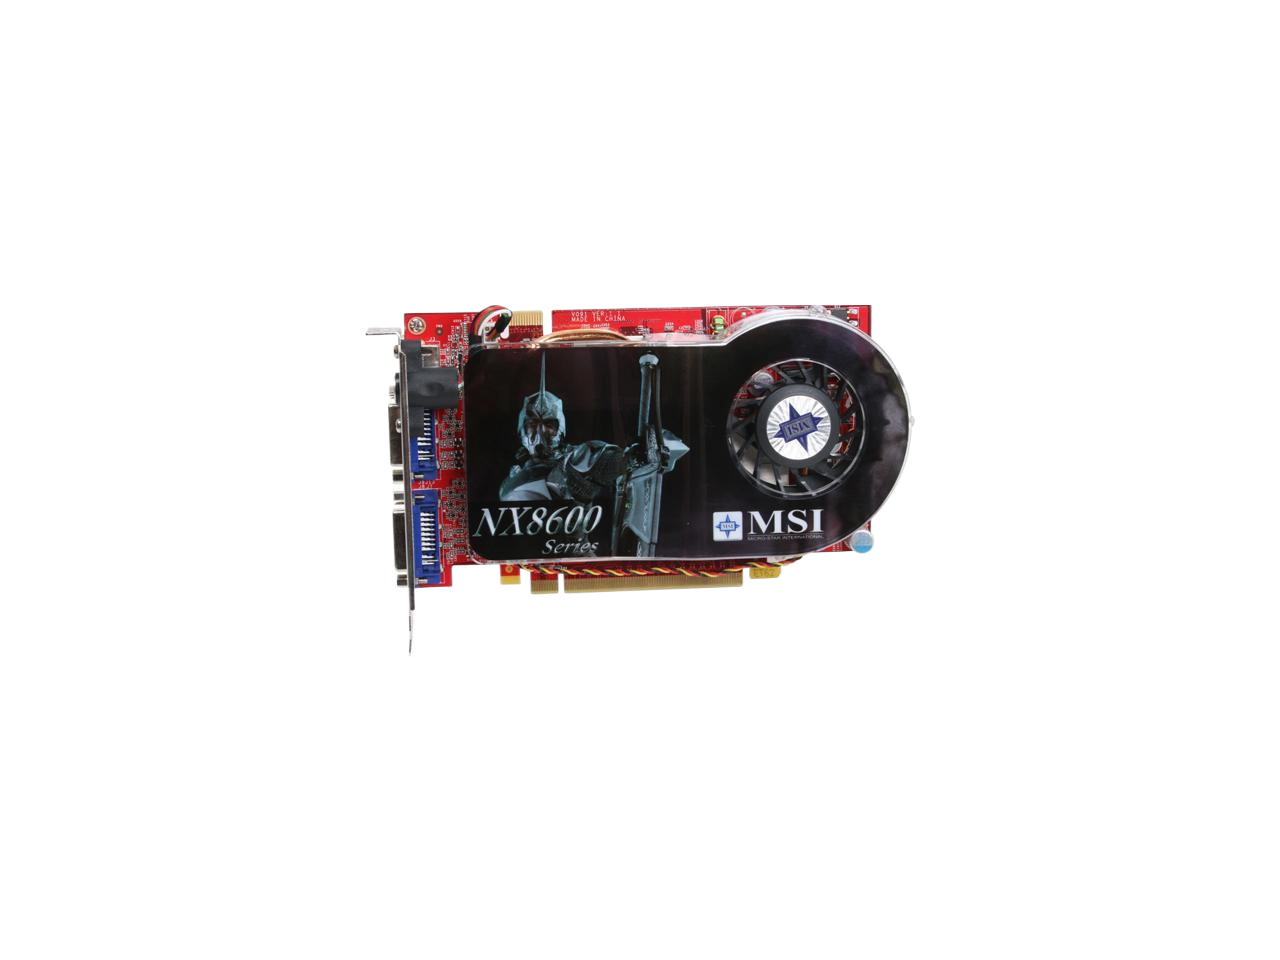 MSI GeForce 8600 GT 256MB GDDR3 PCI Express x16 SLI Support NX8600GT Twin Turbo Video Card